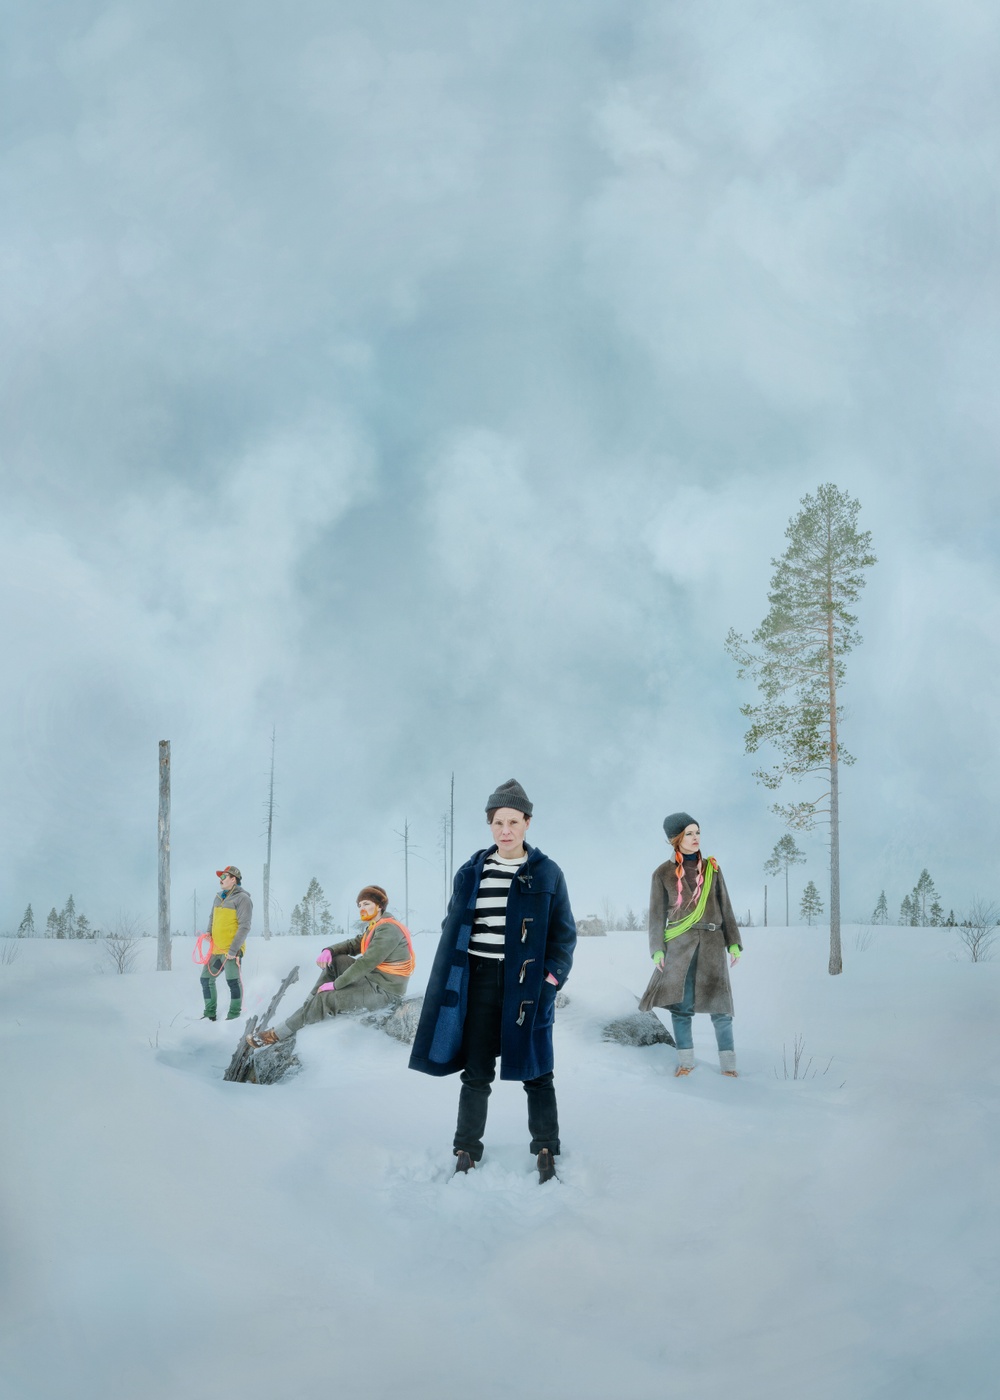 "När vi var samer" - Premiär hösten 2024 på Västerbottensteatern.
Foto: Lisalove Bäckman